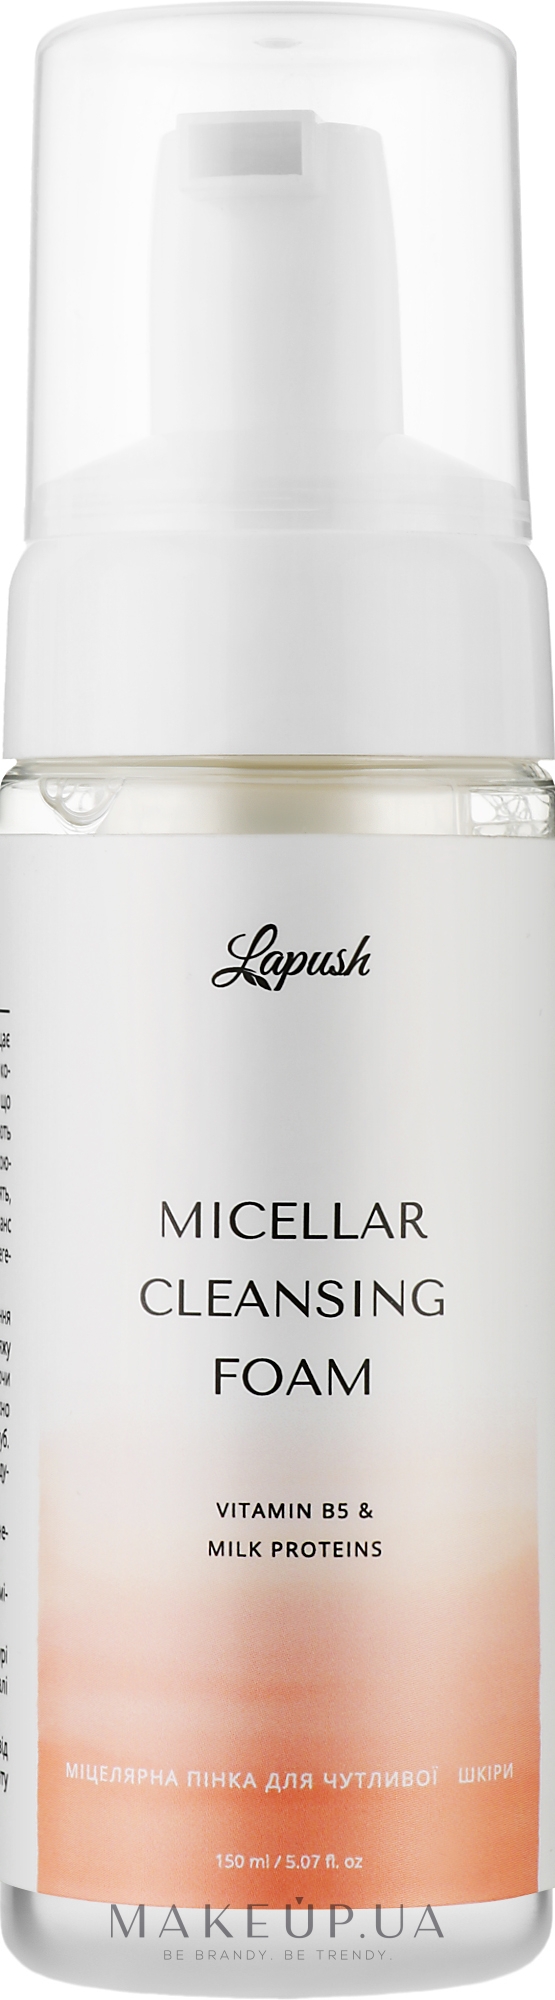 Міцелярна пінка для чутливої шкіри з вітаміном В5 та молочними протеїнами - Lapush Micellar Cleansing Foam Vitamin B5 & Milk Proteins — фото 150ml